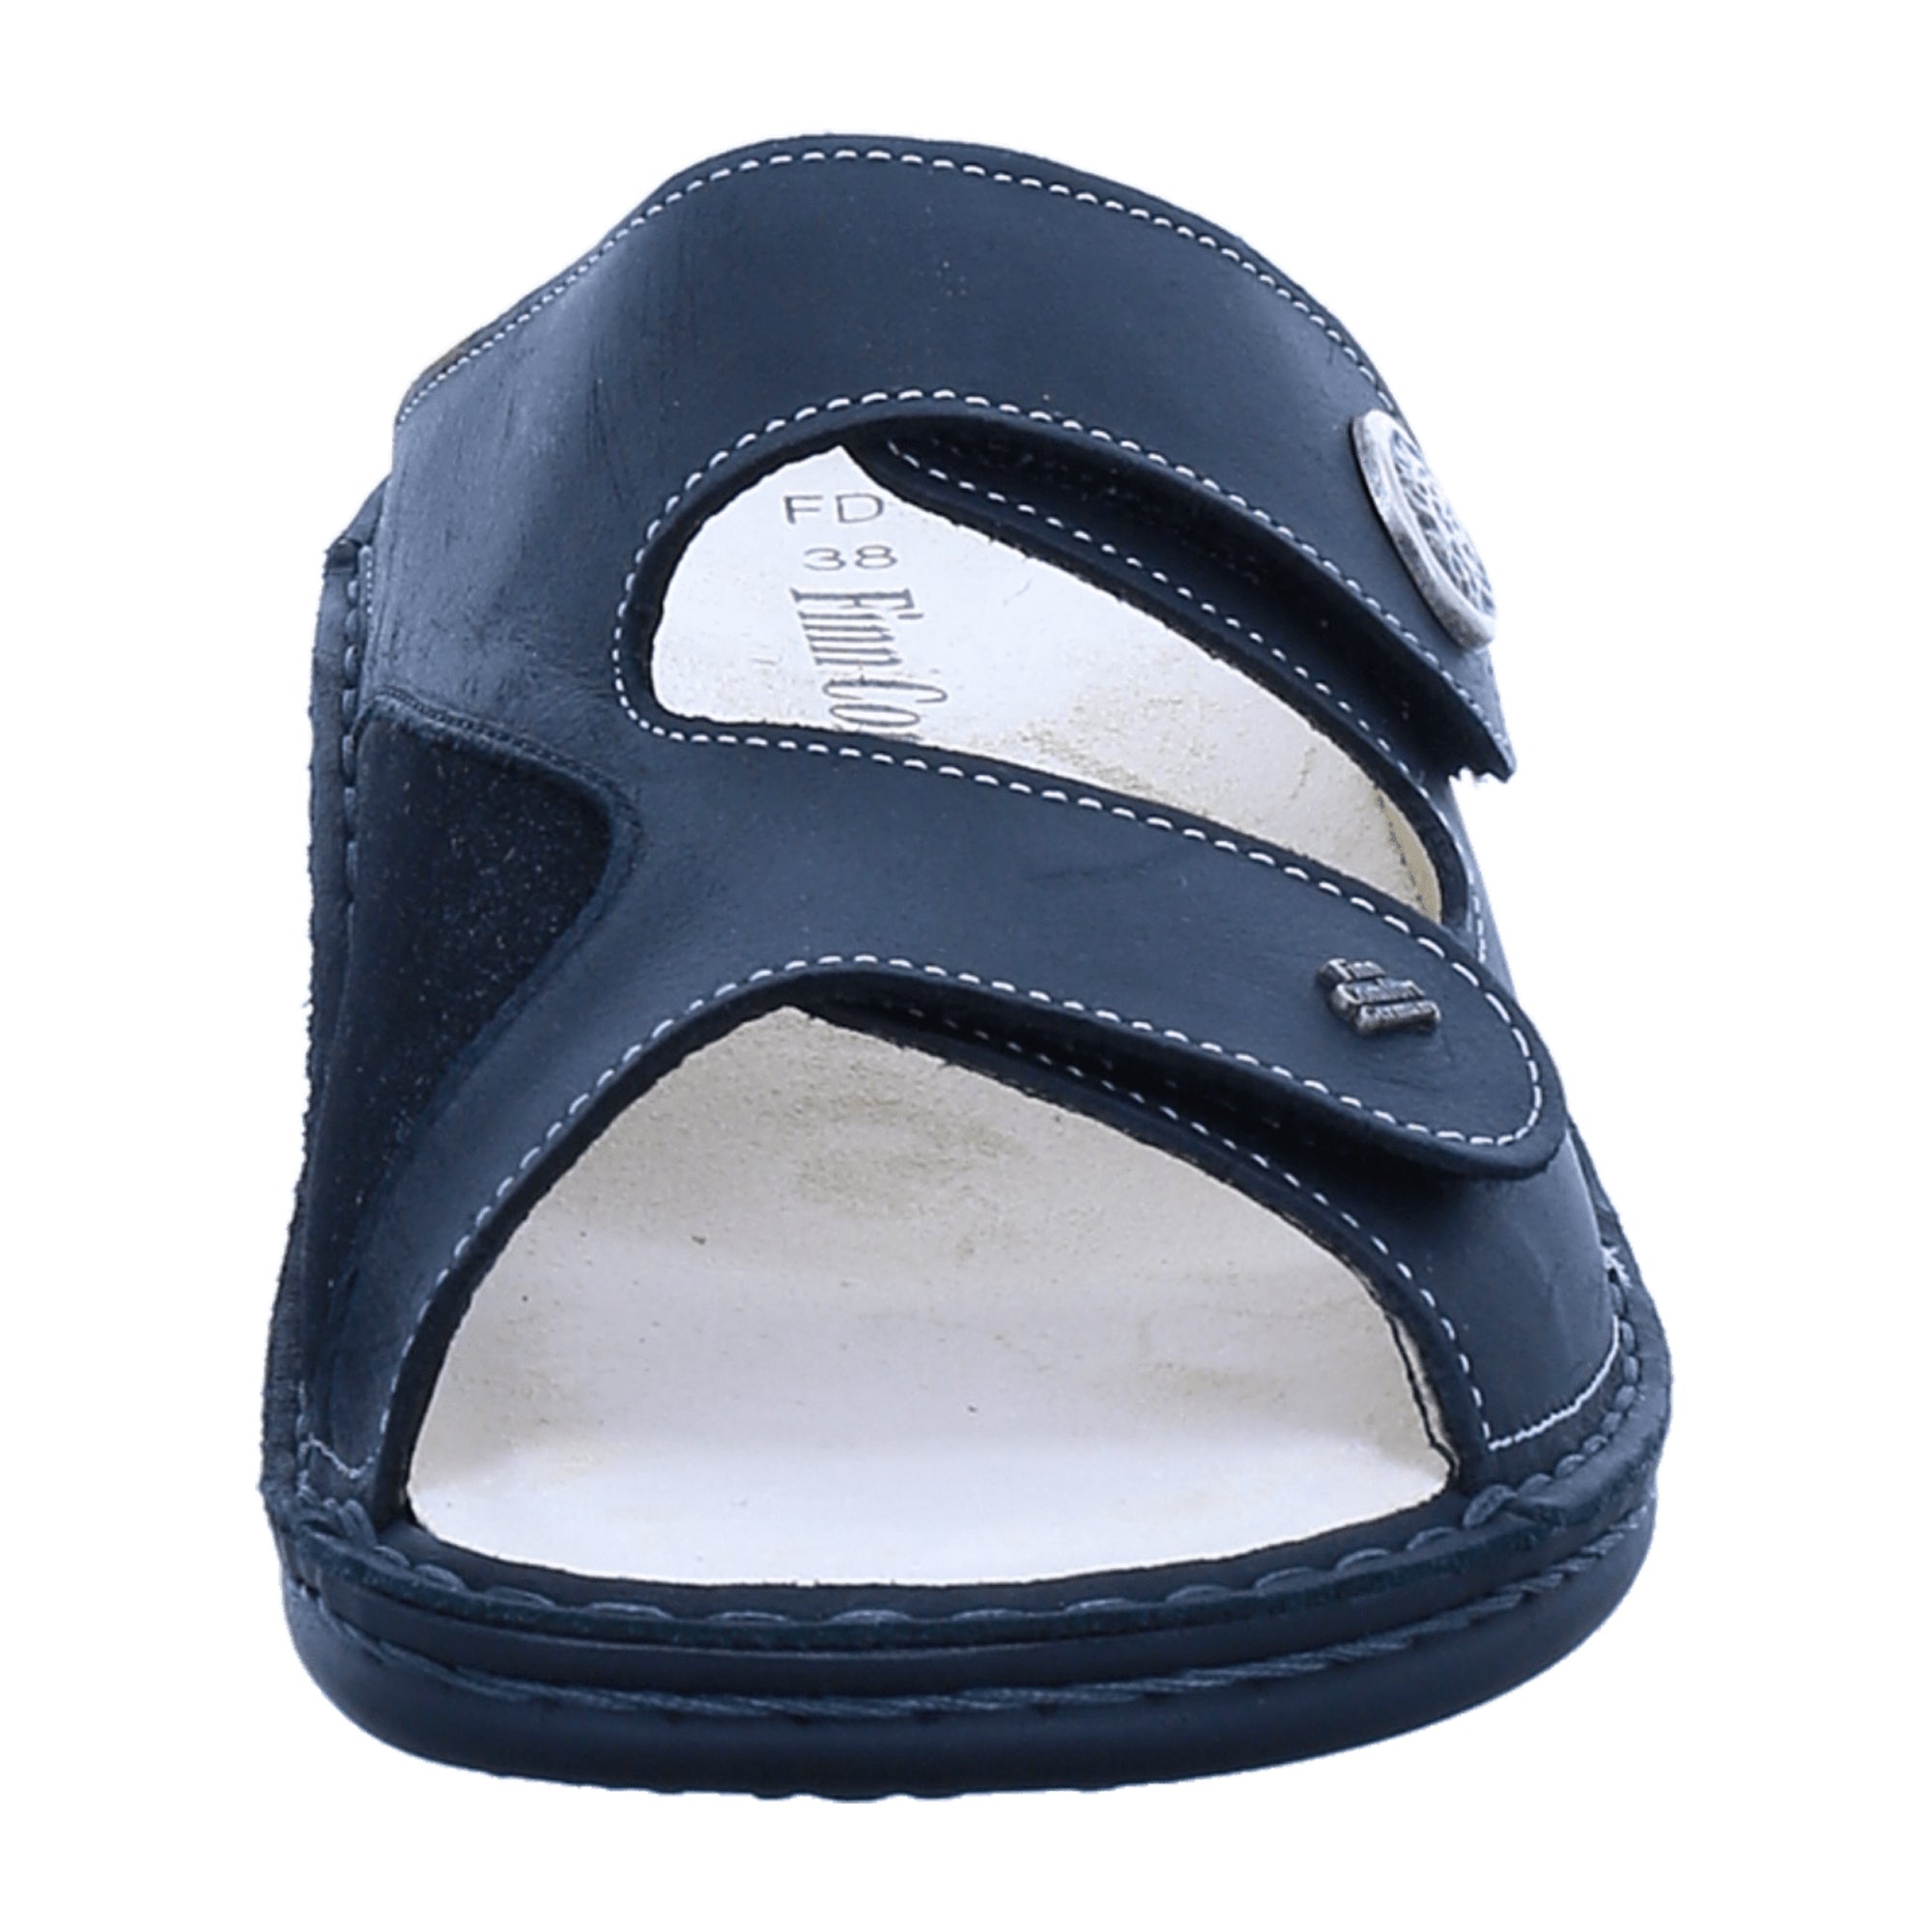 Finn Comfort Zeno Women's Comfort Sandals, Sleek Black